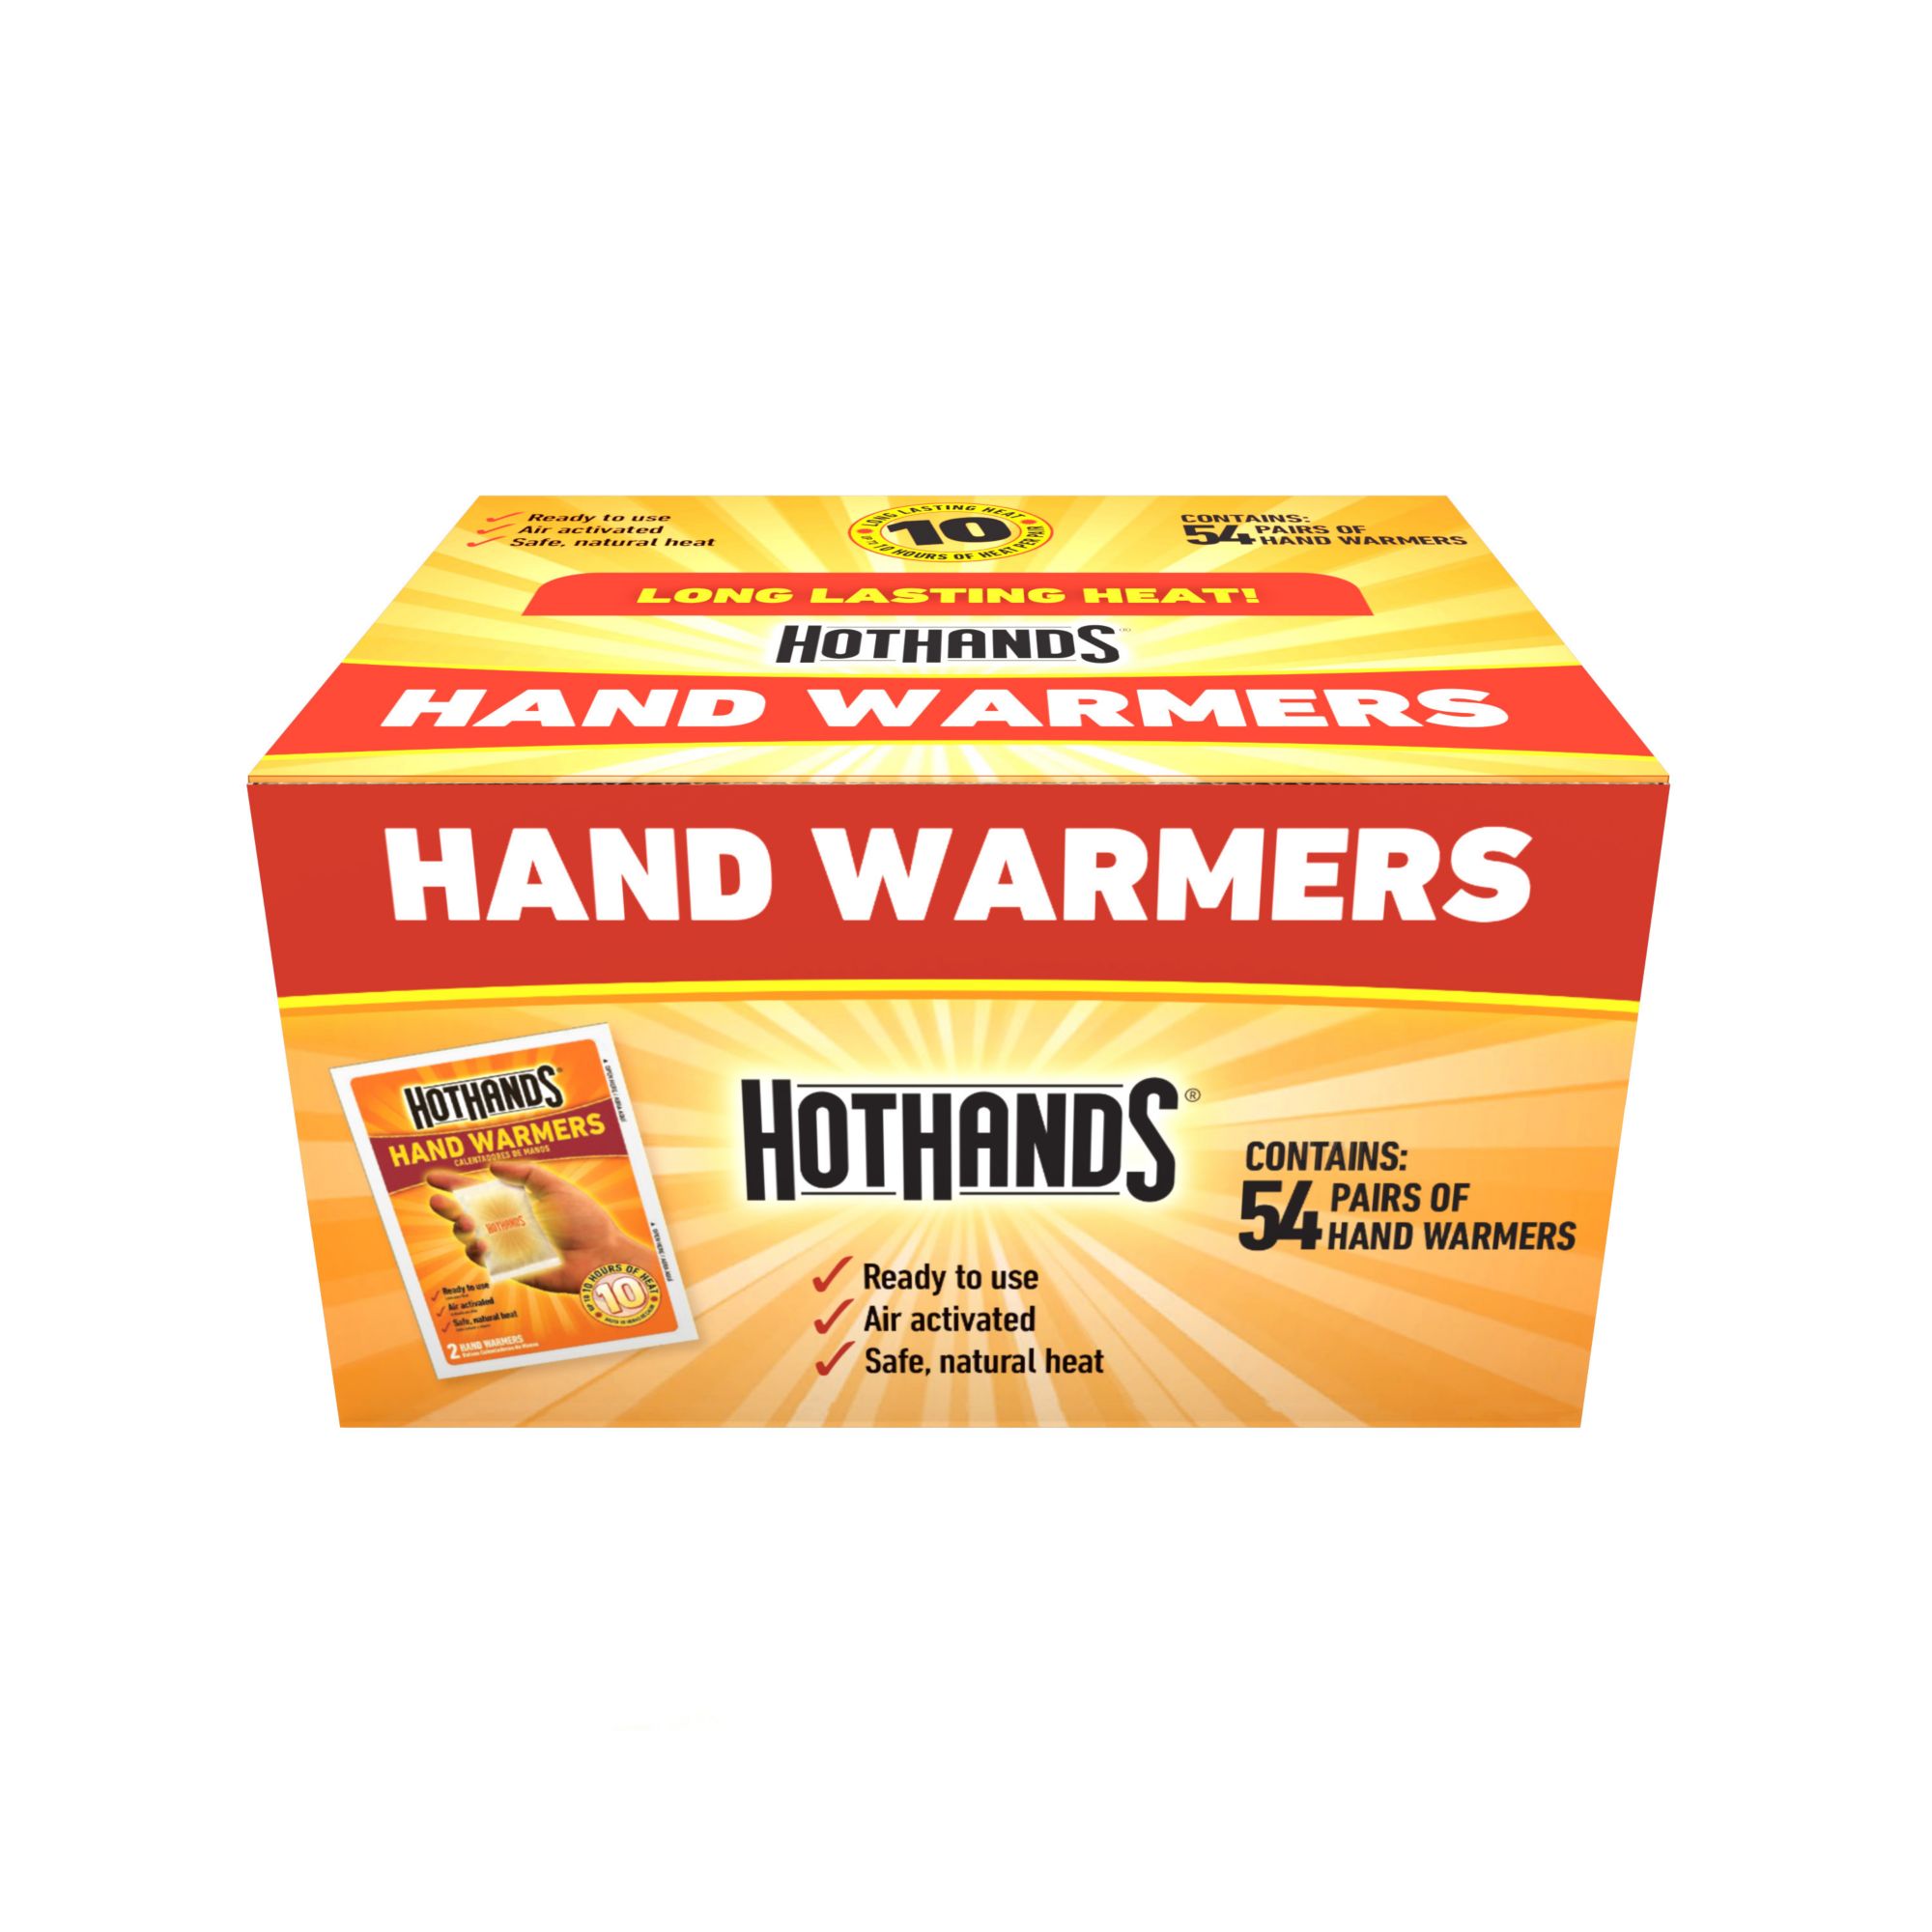 HotHands Hand Warmer 50 pk.